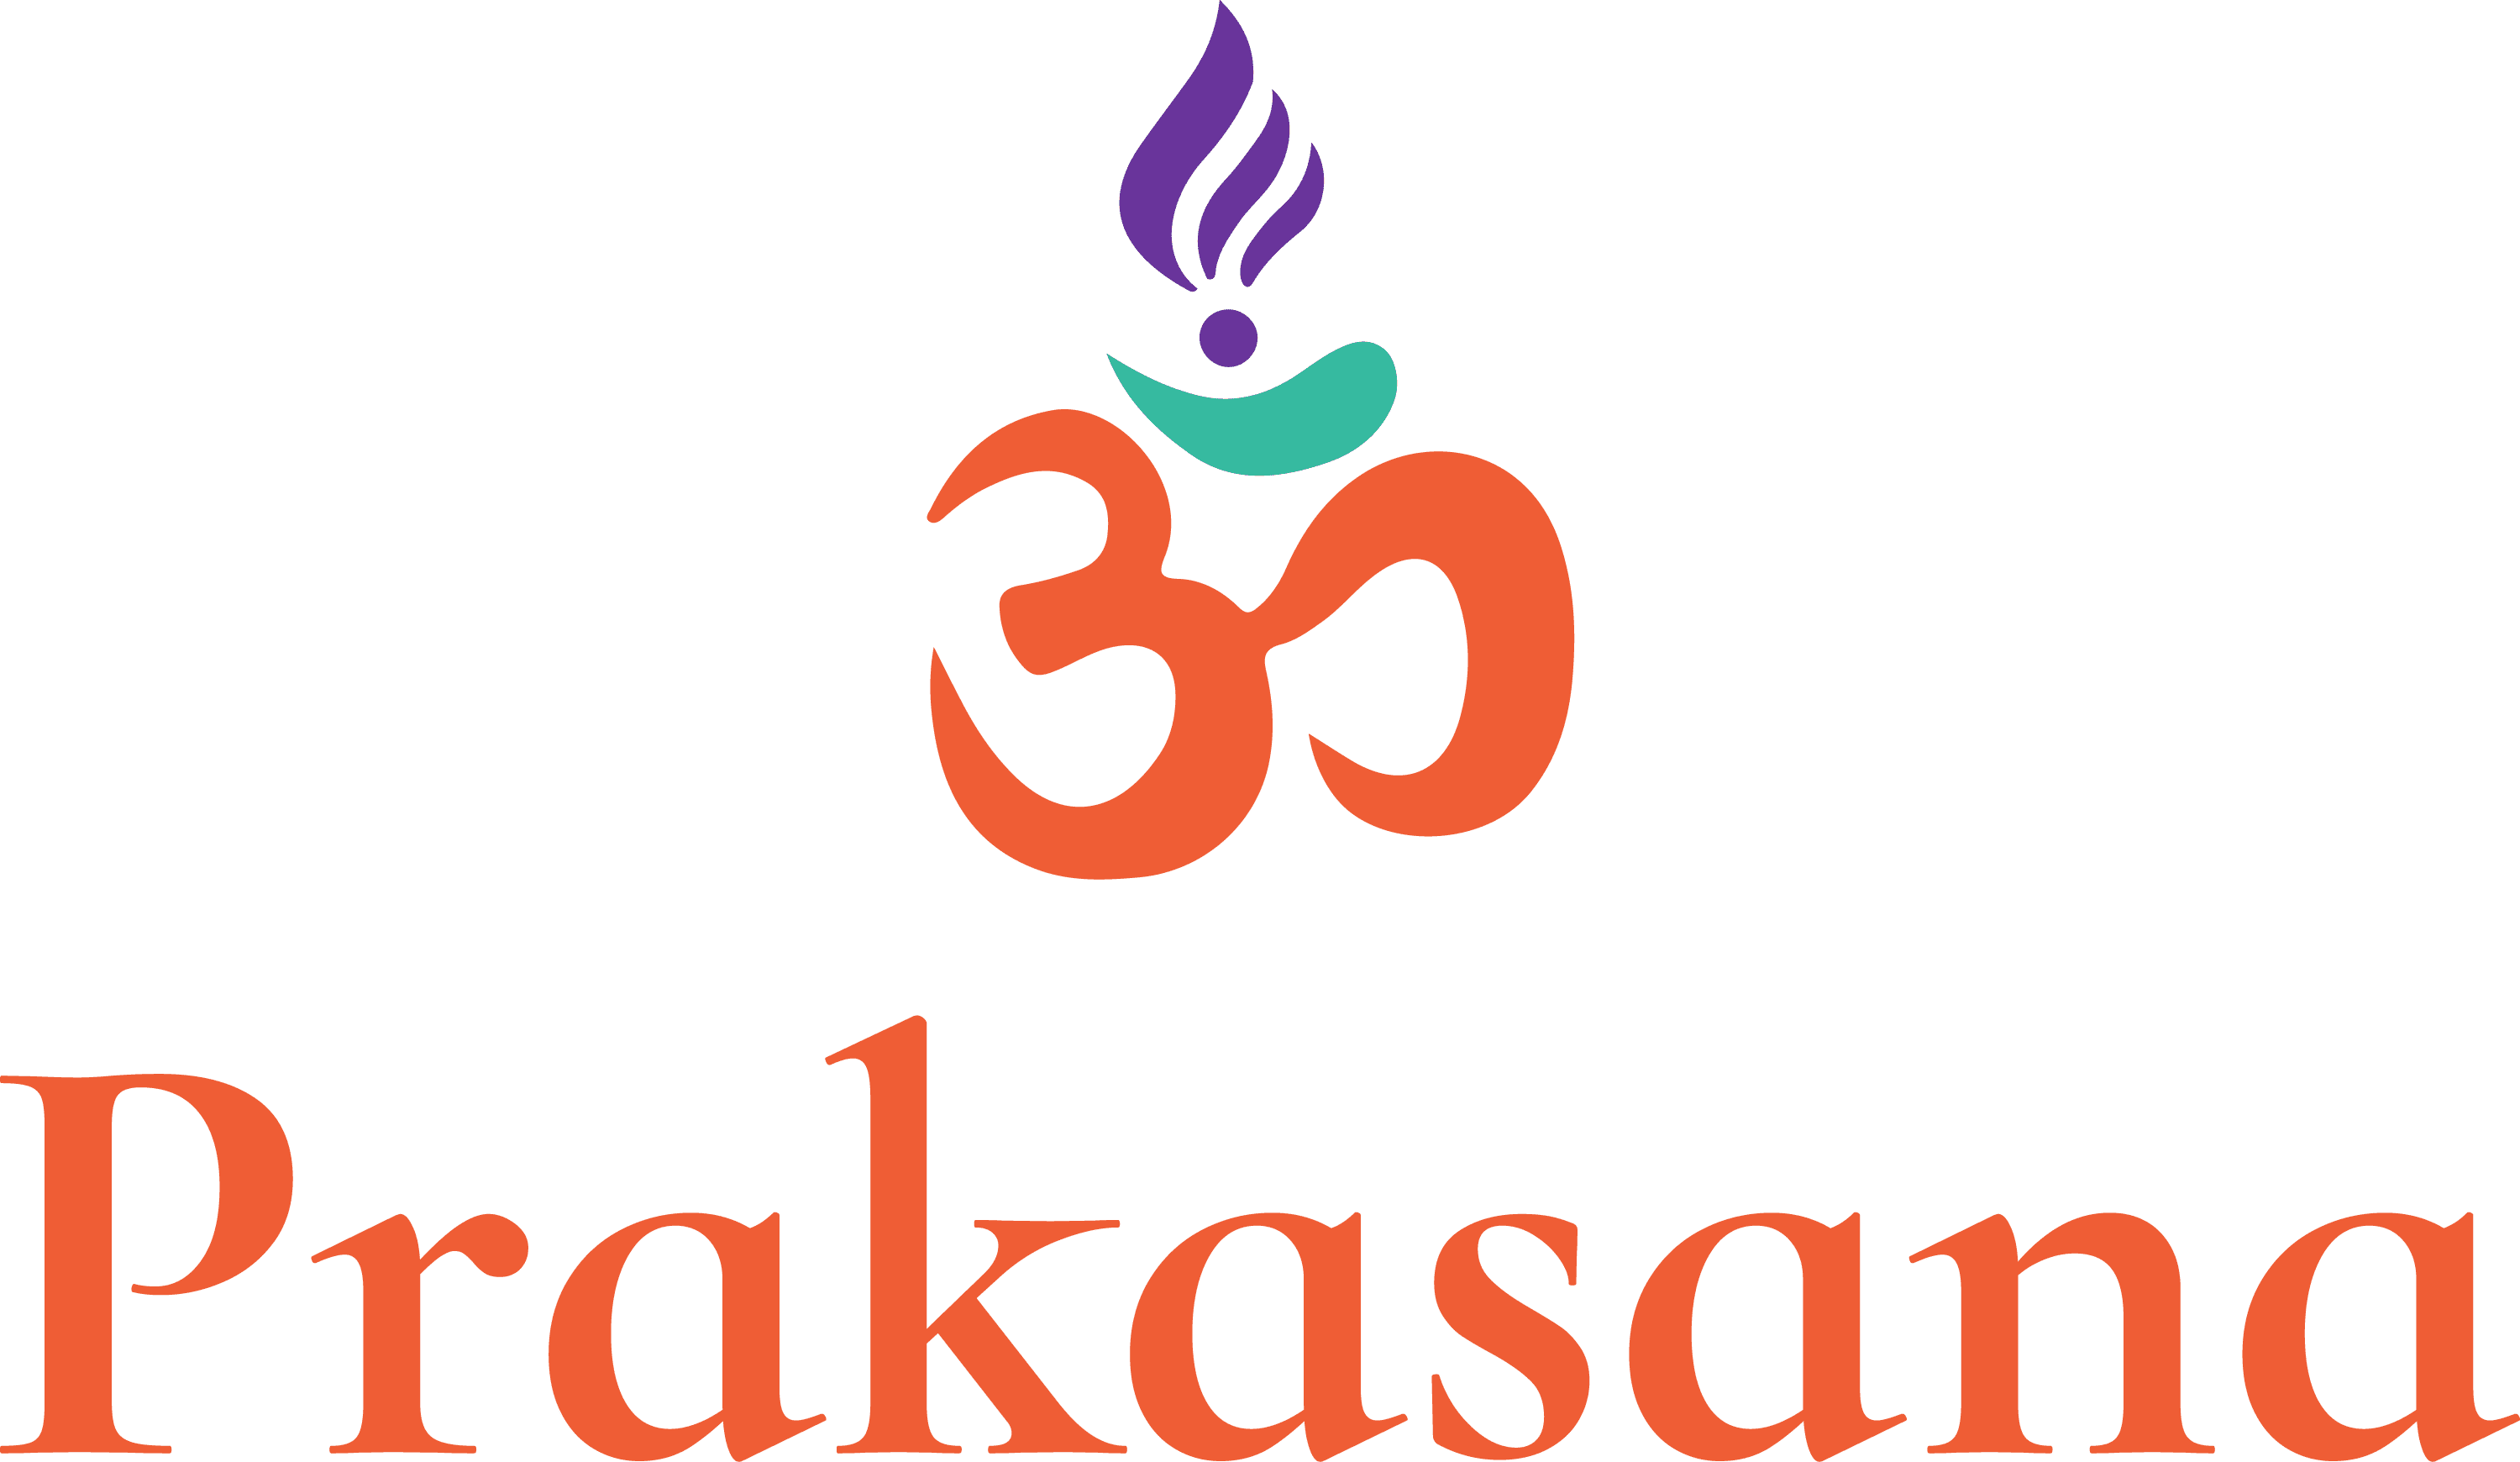 Prakasana Yoga Logo, vertical